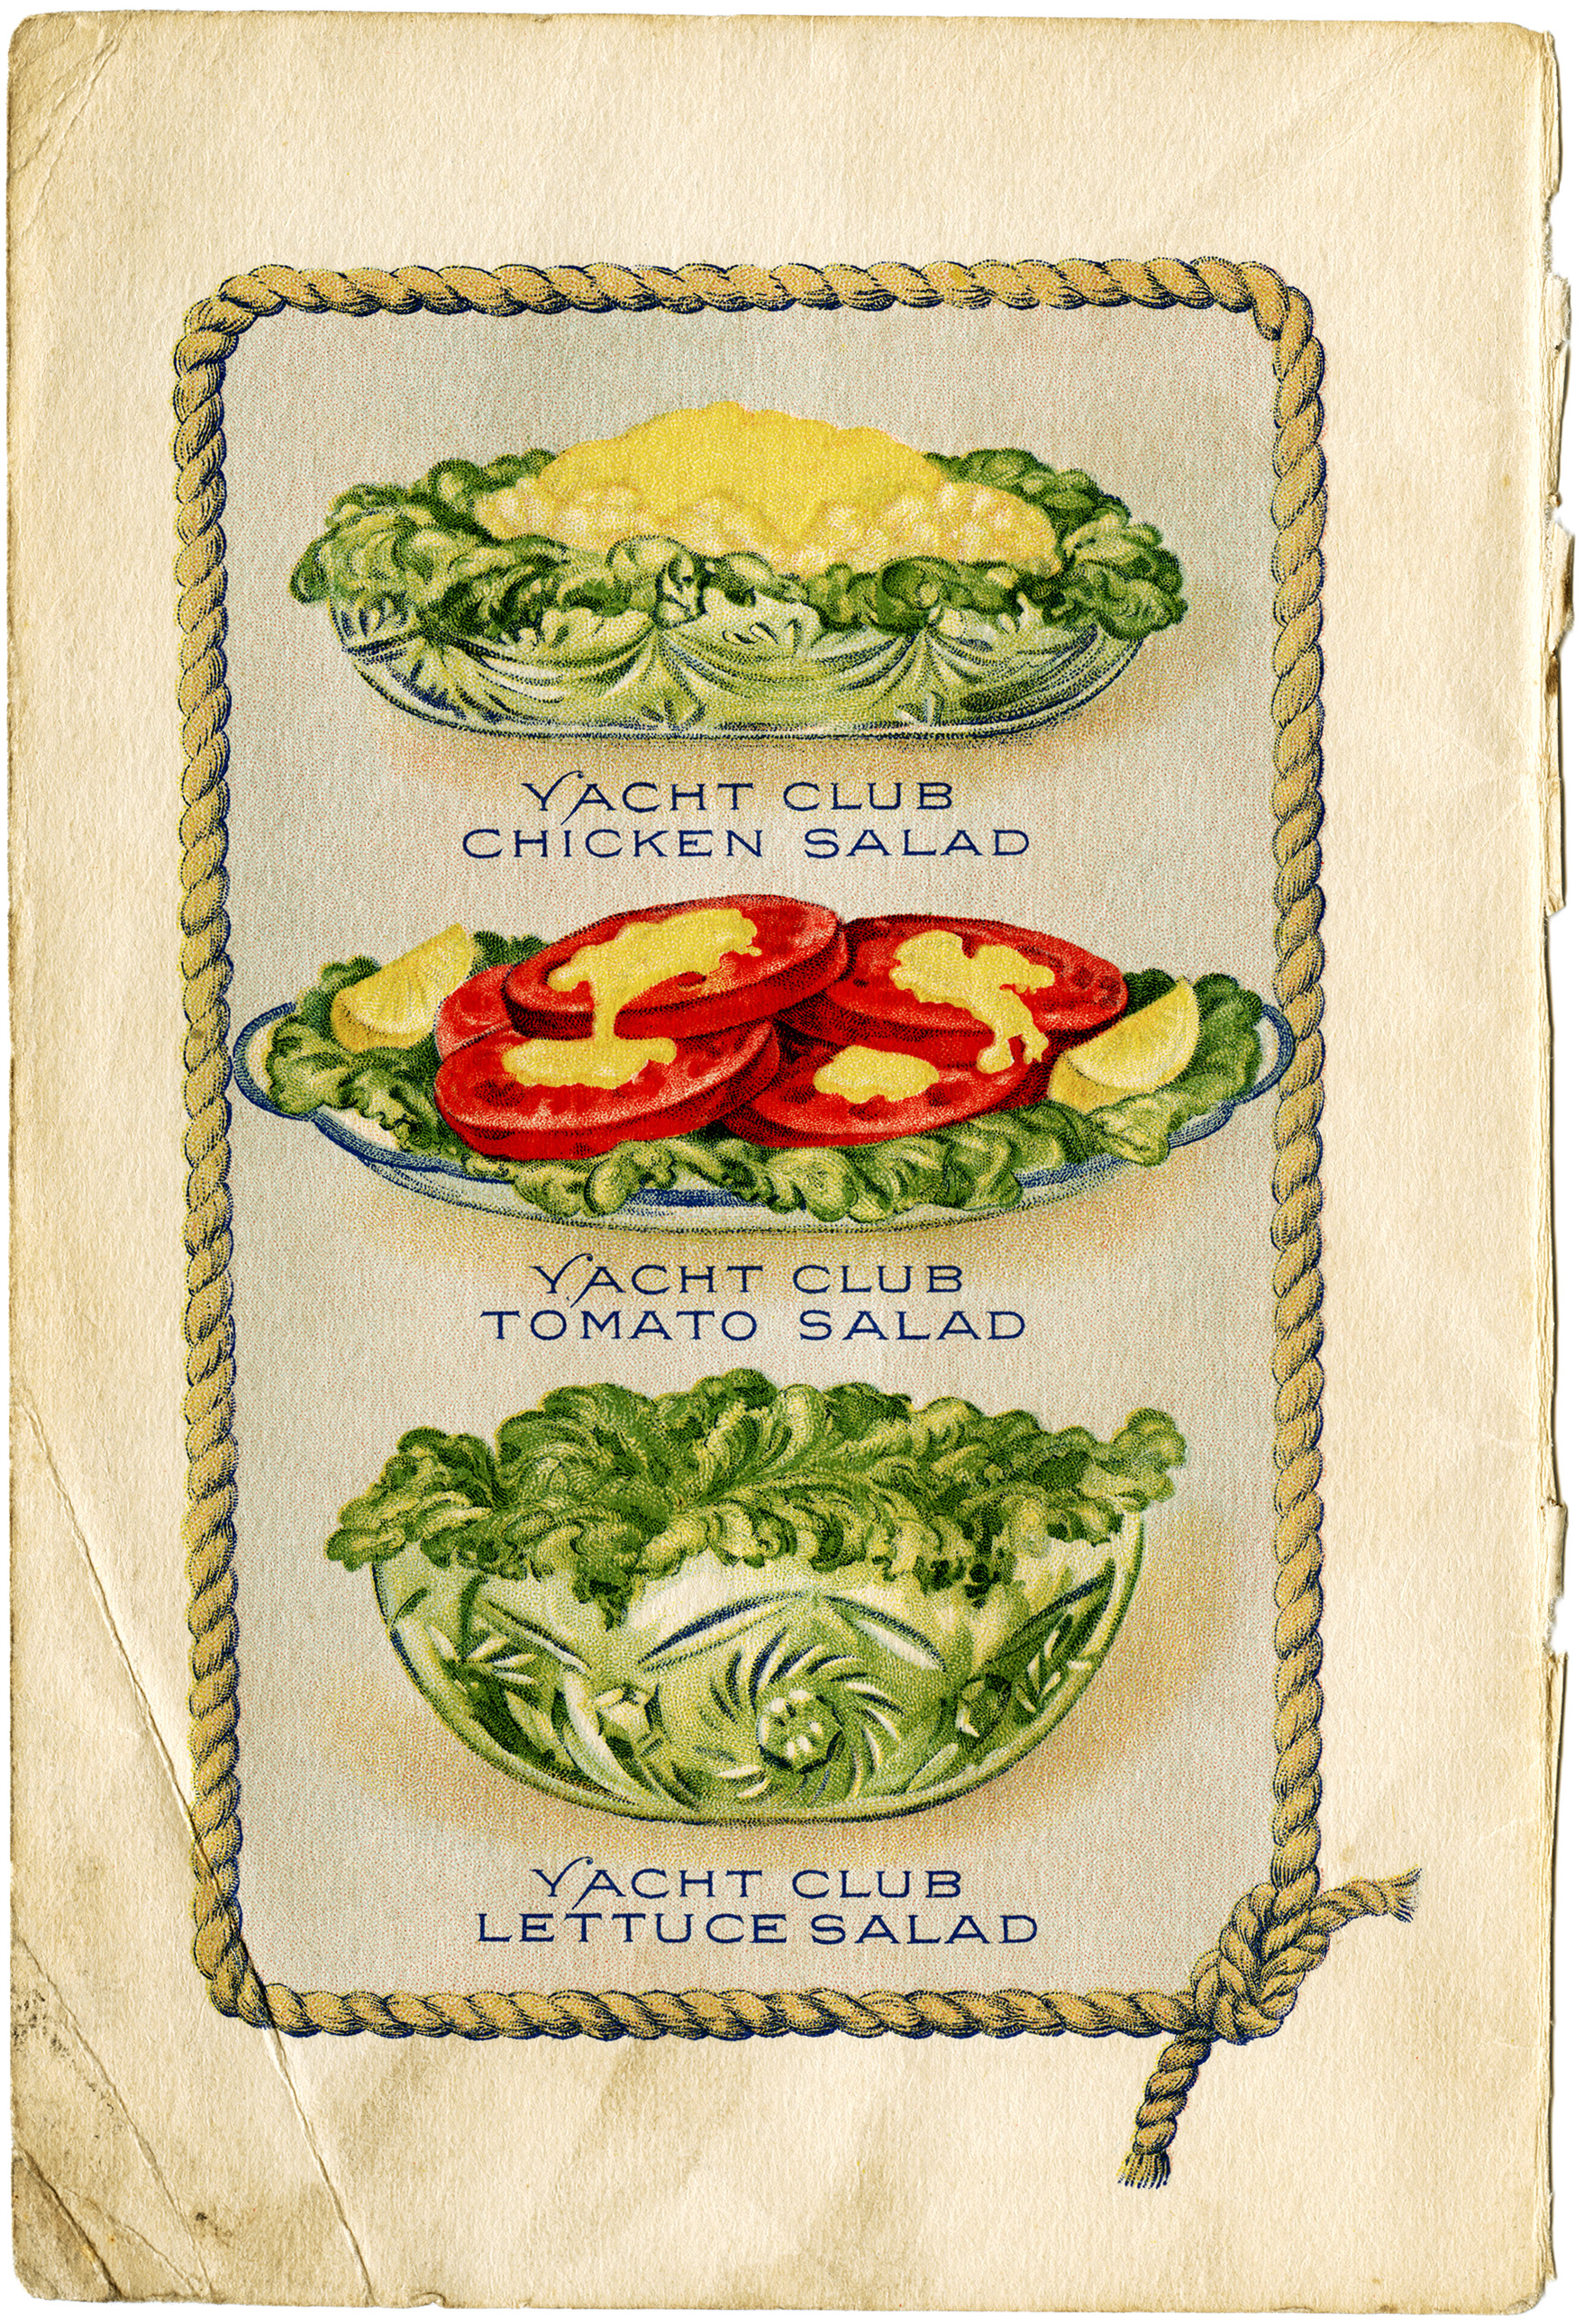 Yacht Club food, vintage salad clip art, old fashioned salad illustration, vintage cookbook page, free digital food graphics